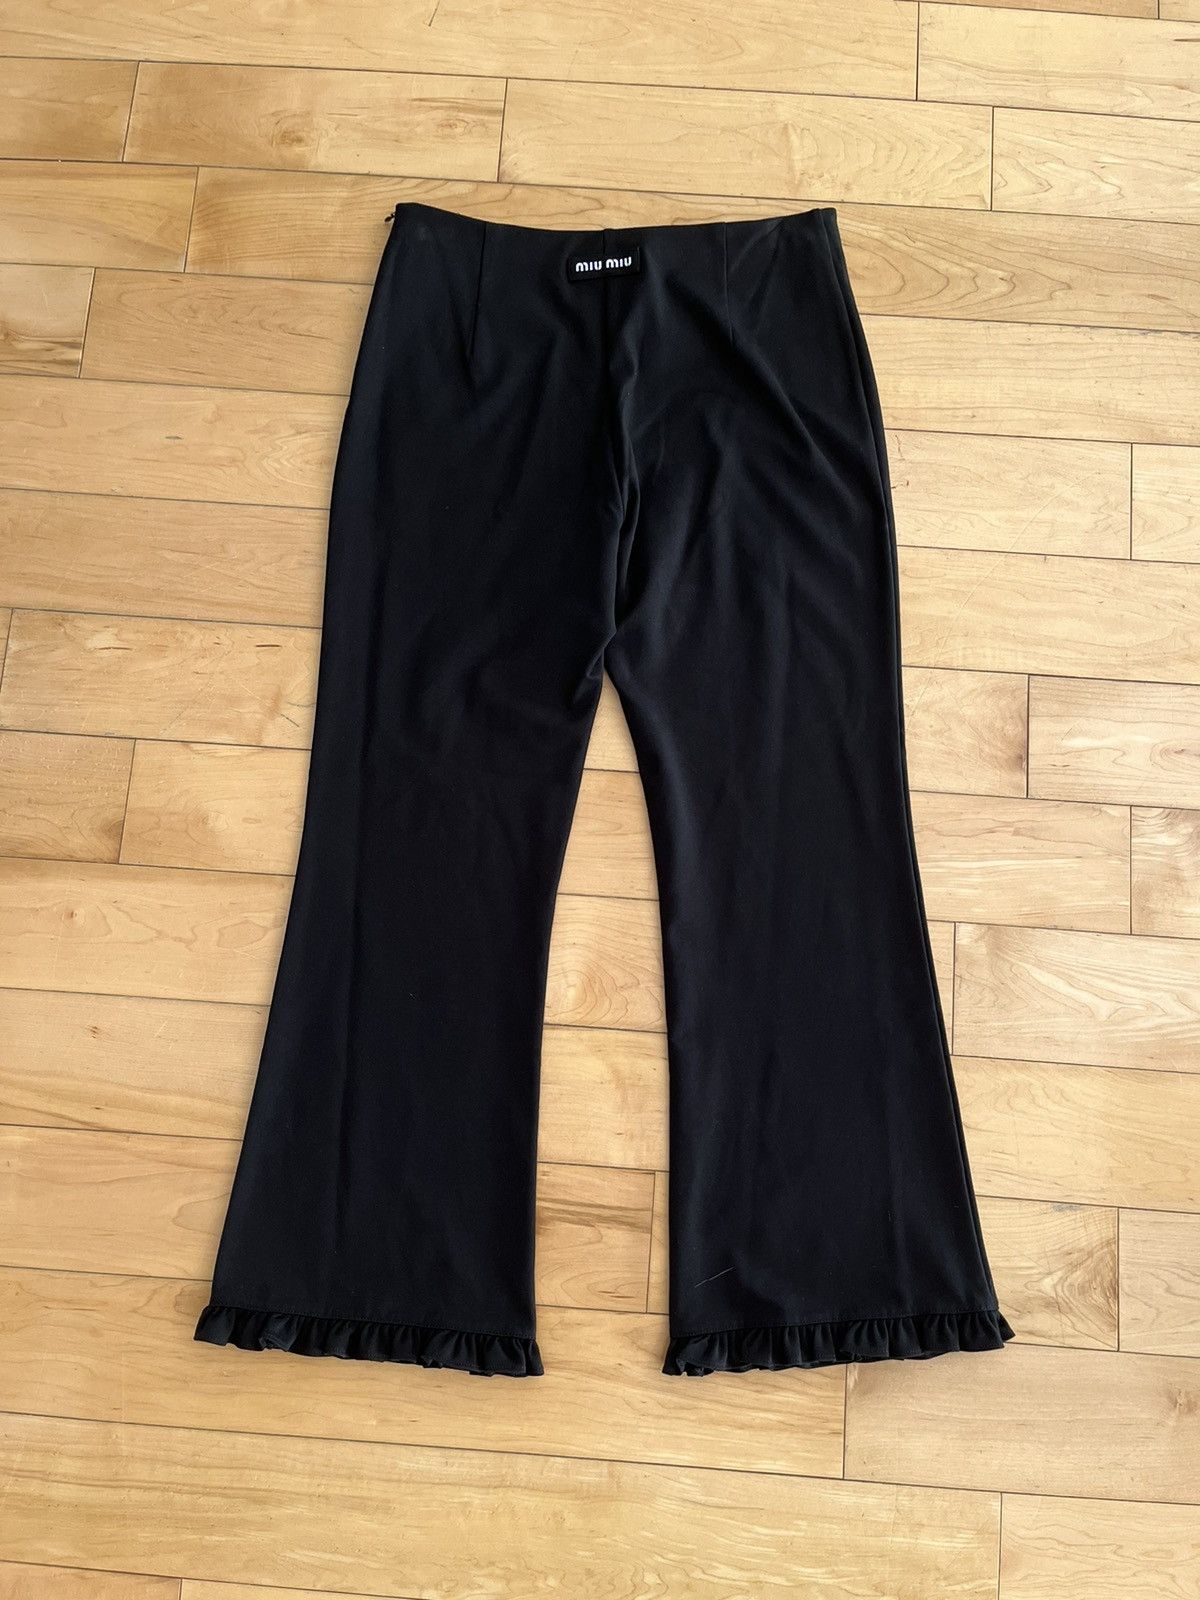 NWT - Miu Miu Jersey Frill Trousers - 2